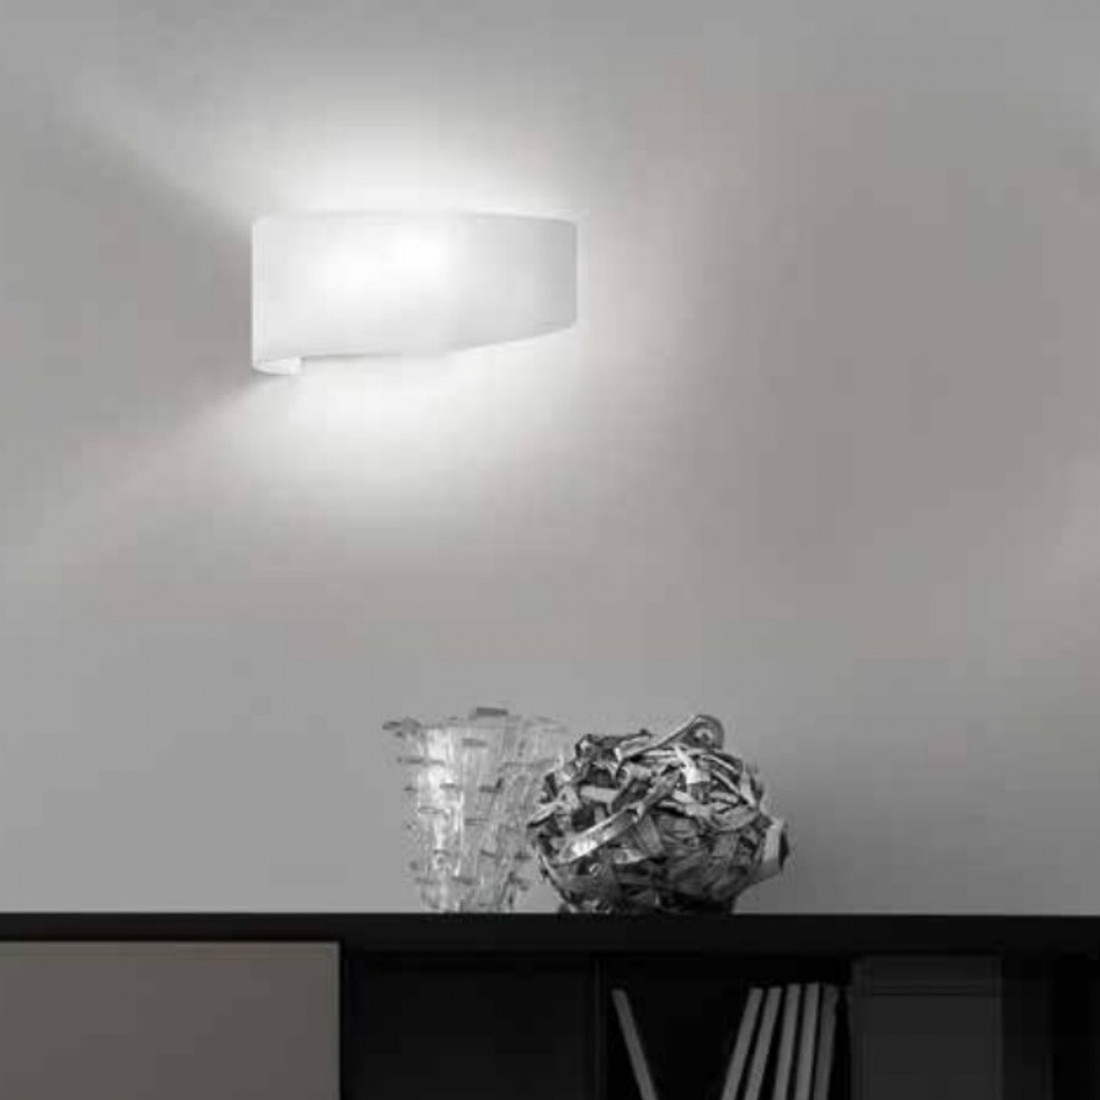 Applique FB-VIRGOLA 582 AV E27 LED vetro colorato luce diffusa lampada parete moderna interno